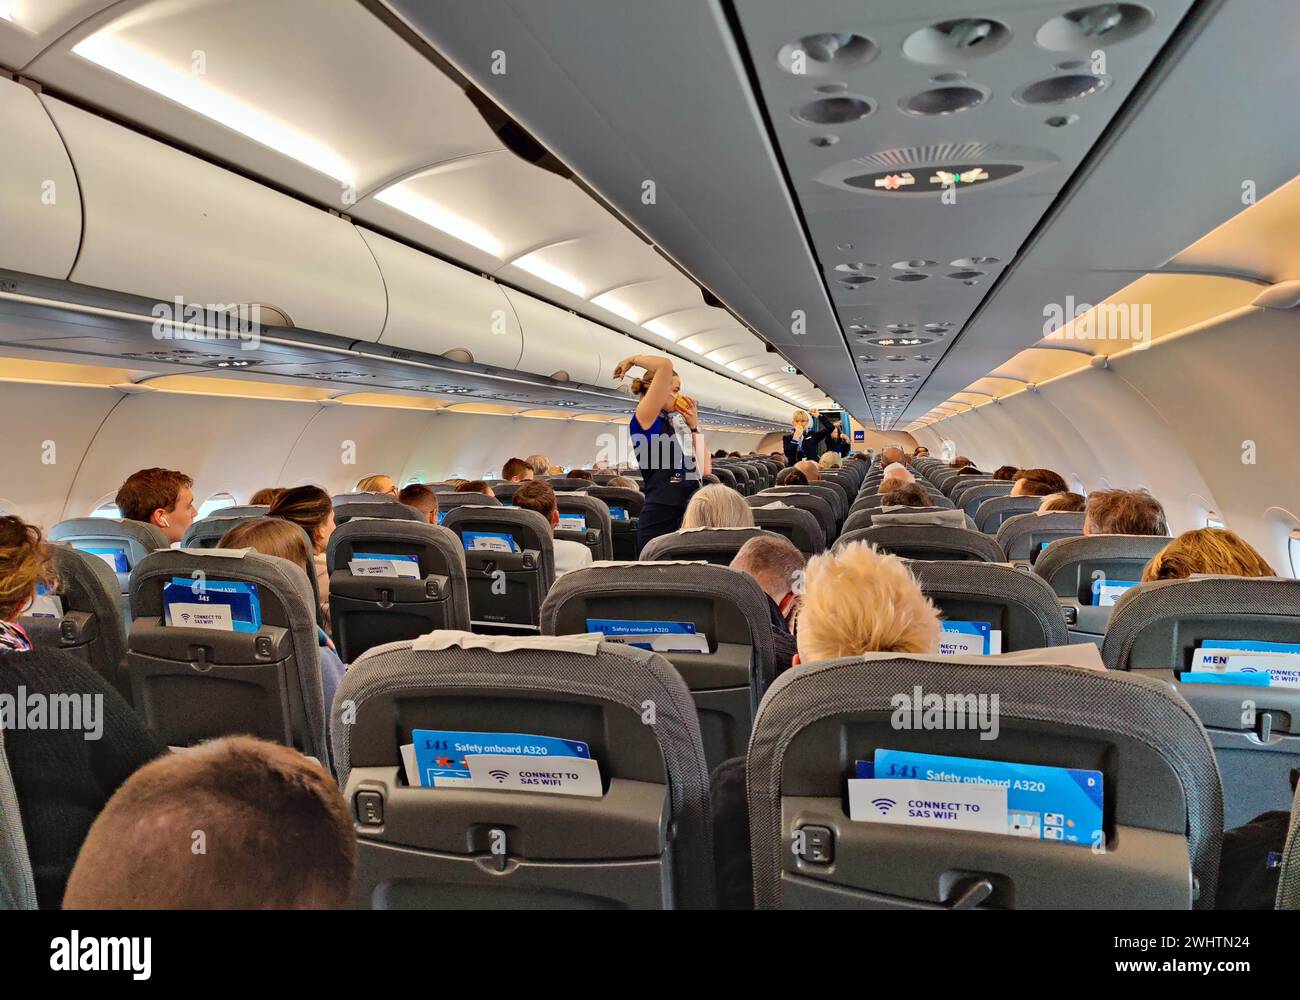 Passagers à l'intérieur d'un aéronef pendant la démonstration de sécurité par les agents de bord Banque D'Images